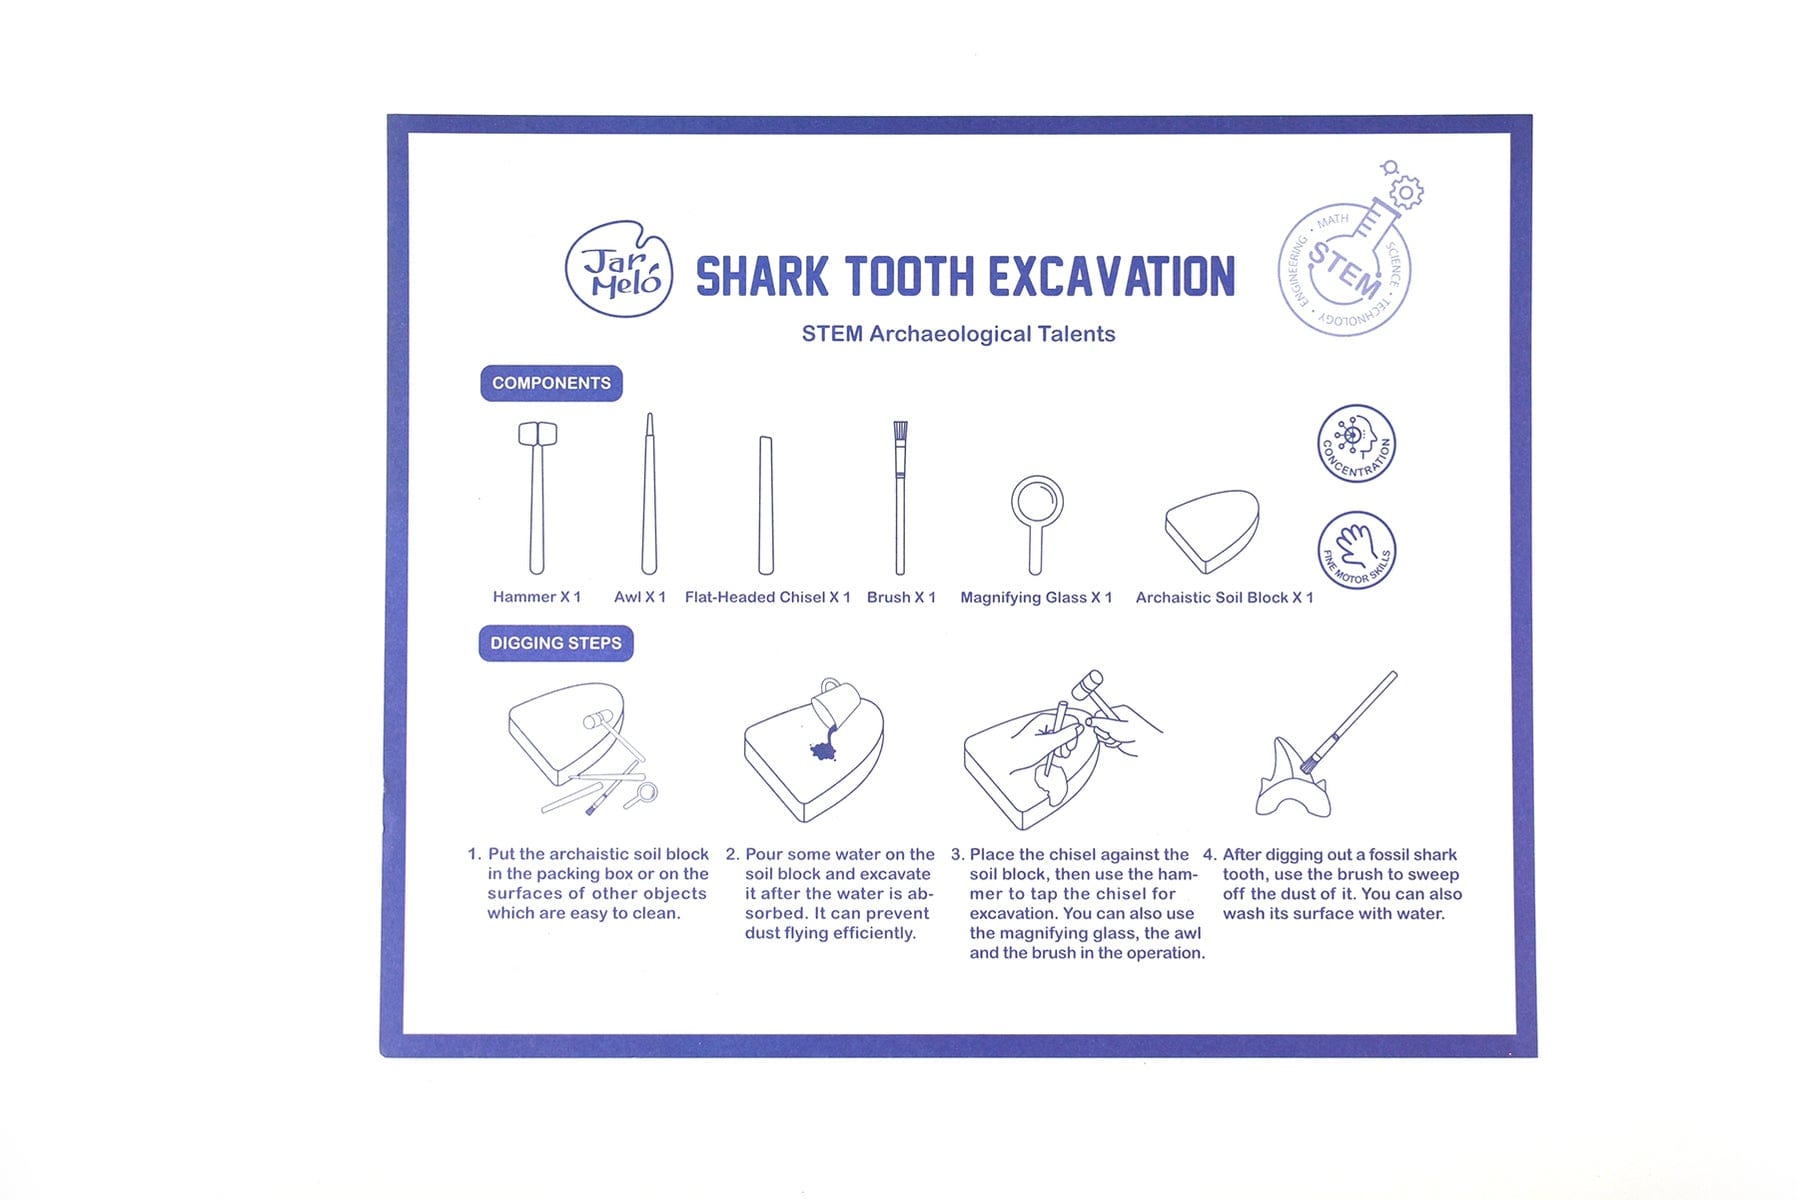 Fossils Excavation Kit - Shark